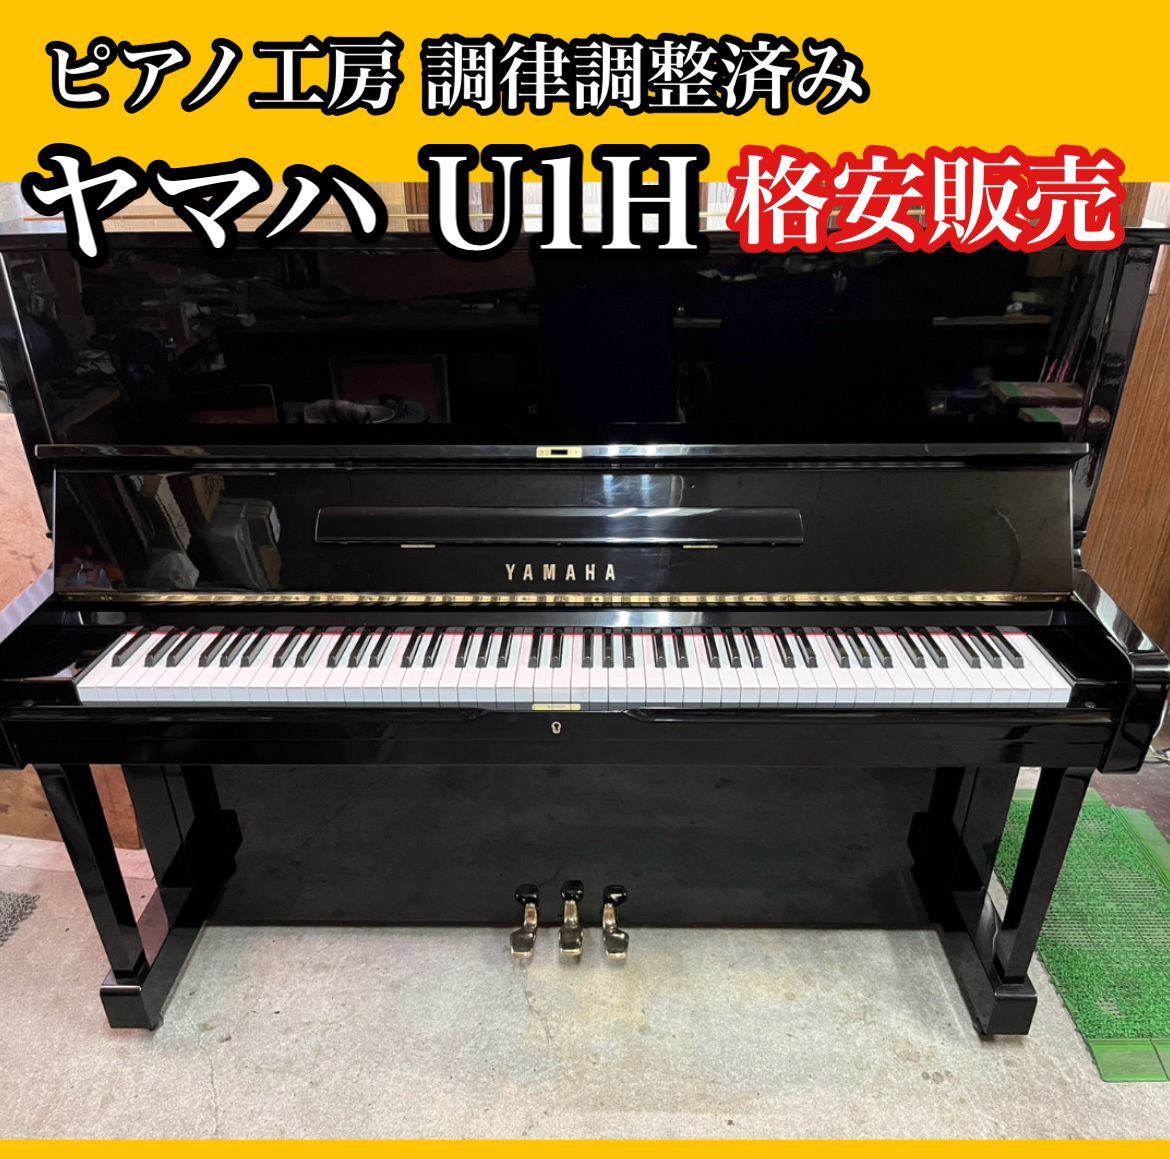 【ピアノ調律師の店】アップライトピアノ ヤマハ YAMAHA U1h 中古ピアノ 美品 格安販売 ※送料別途要